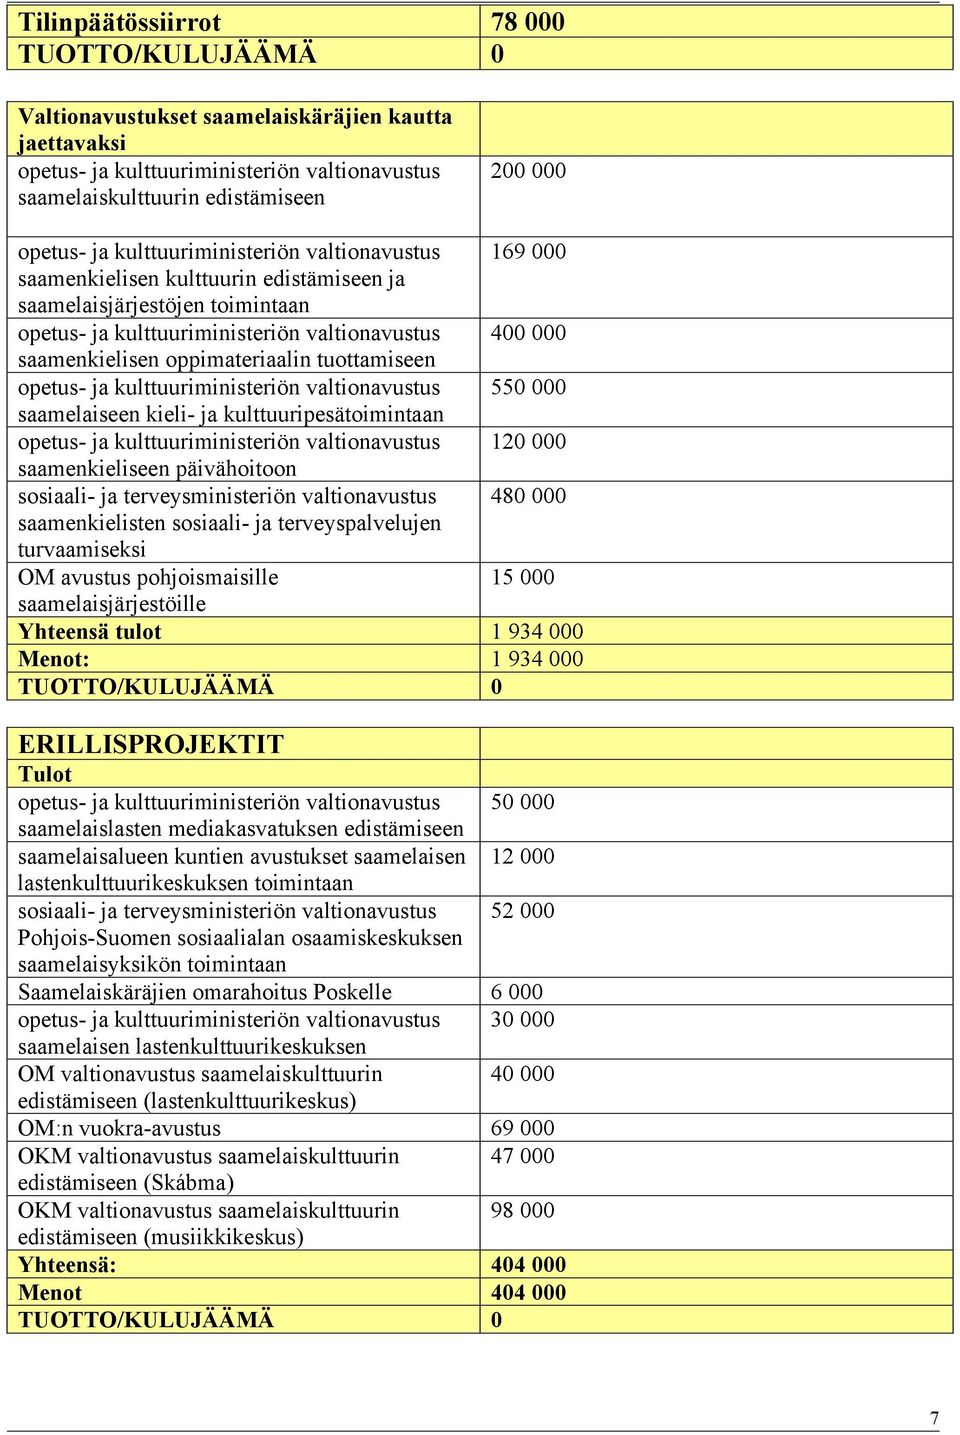 oppimateriaalin tuottamiseen opetus- ja kulttuuriministeriön valtionavustus 550 000 saamelaiseen kieli- ja kulttuuripesätoimintaan opetus- ja kulttuuriministeriön valtionavustus 120 000